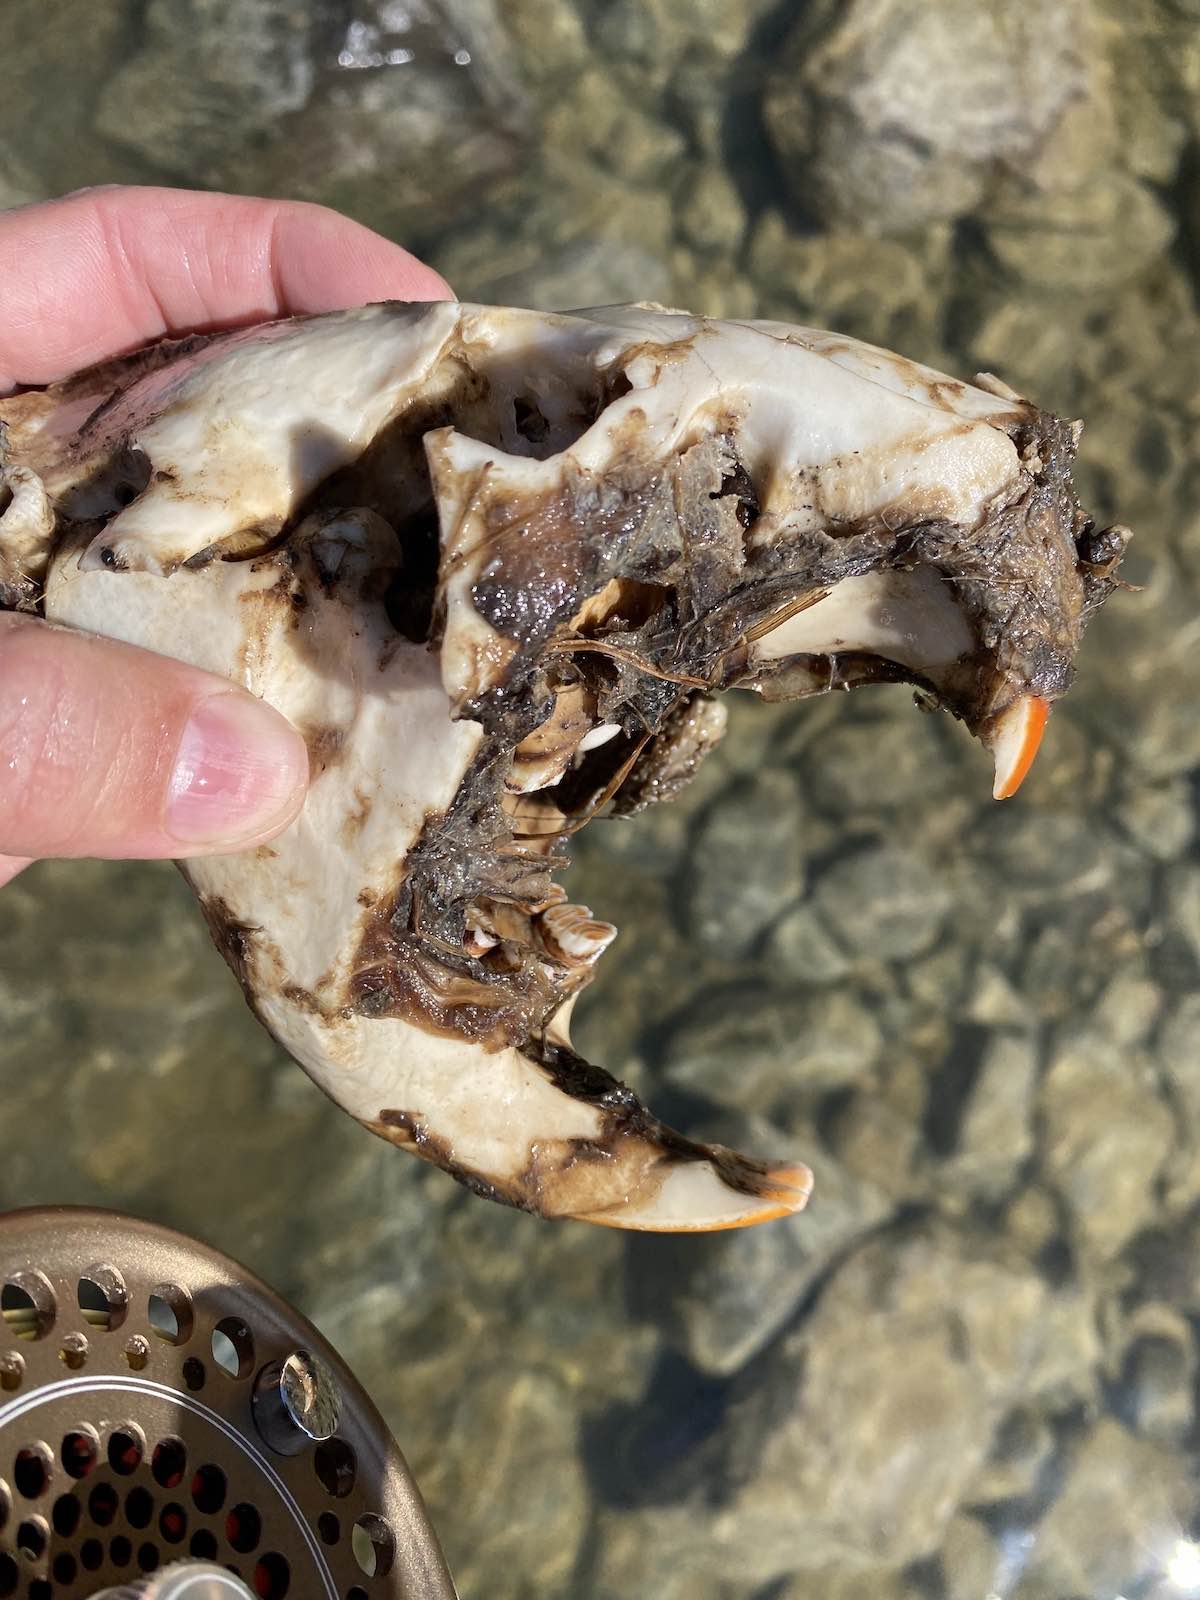 Beaver skull found in river